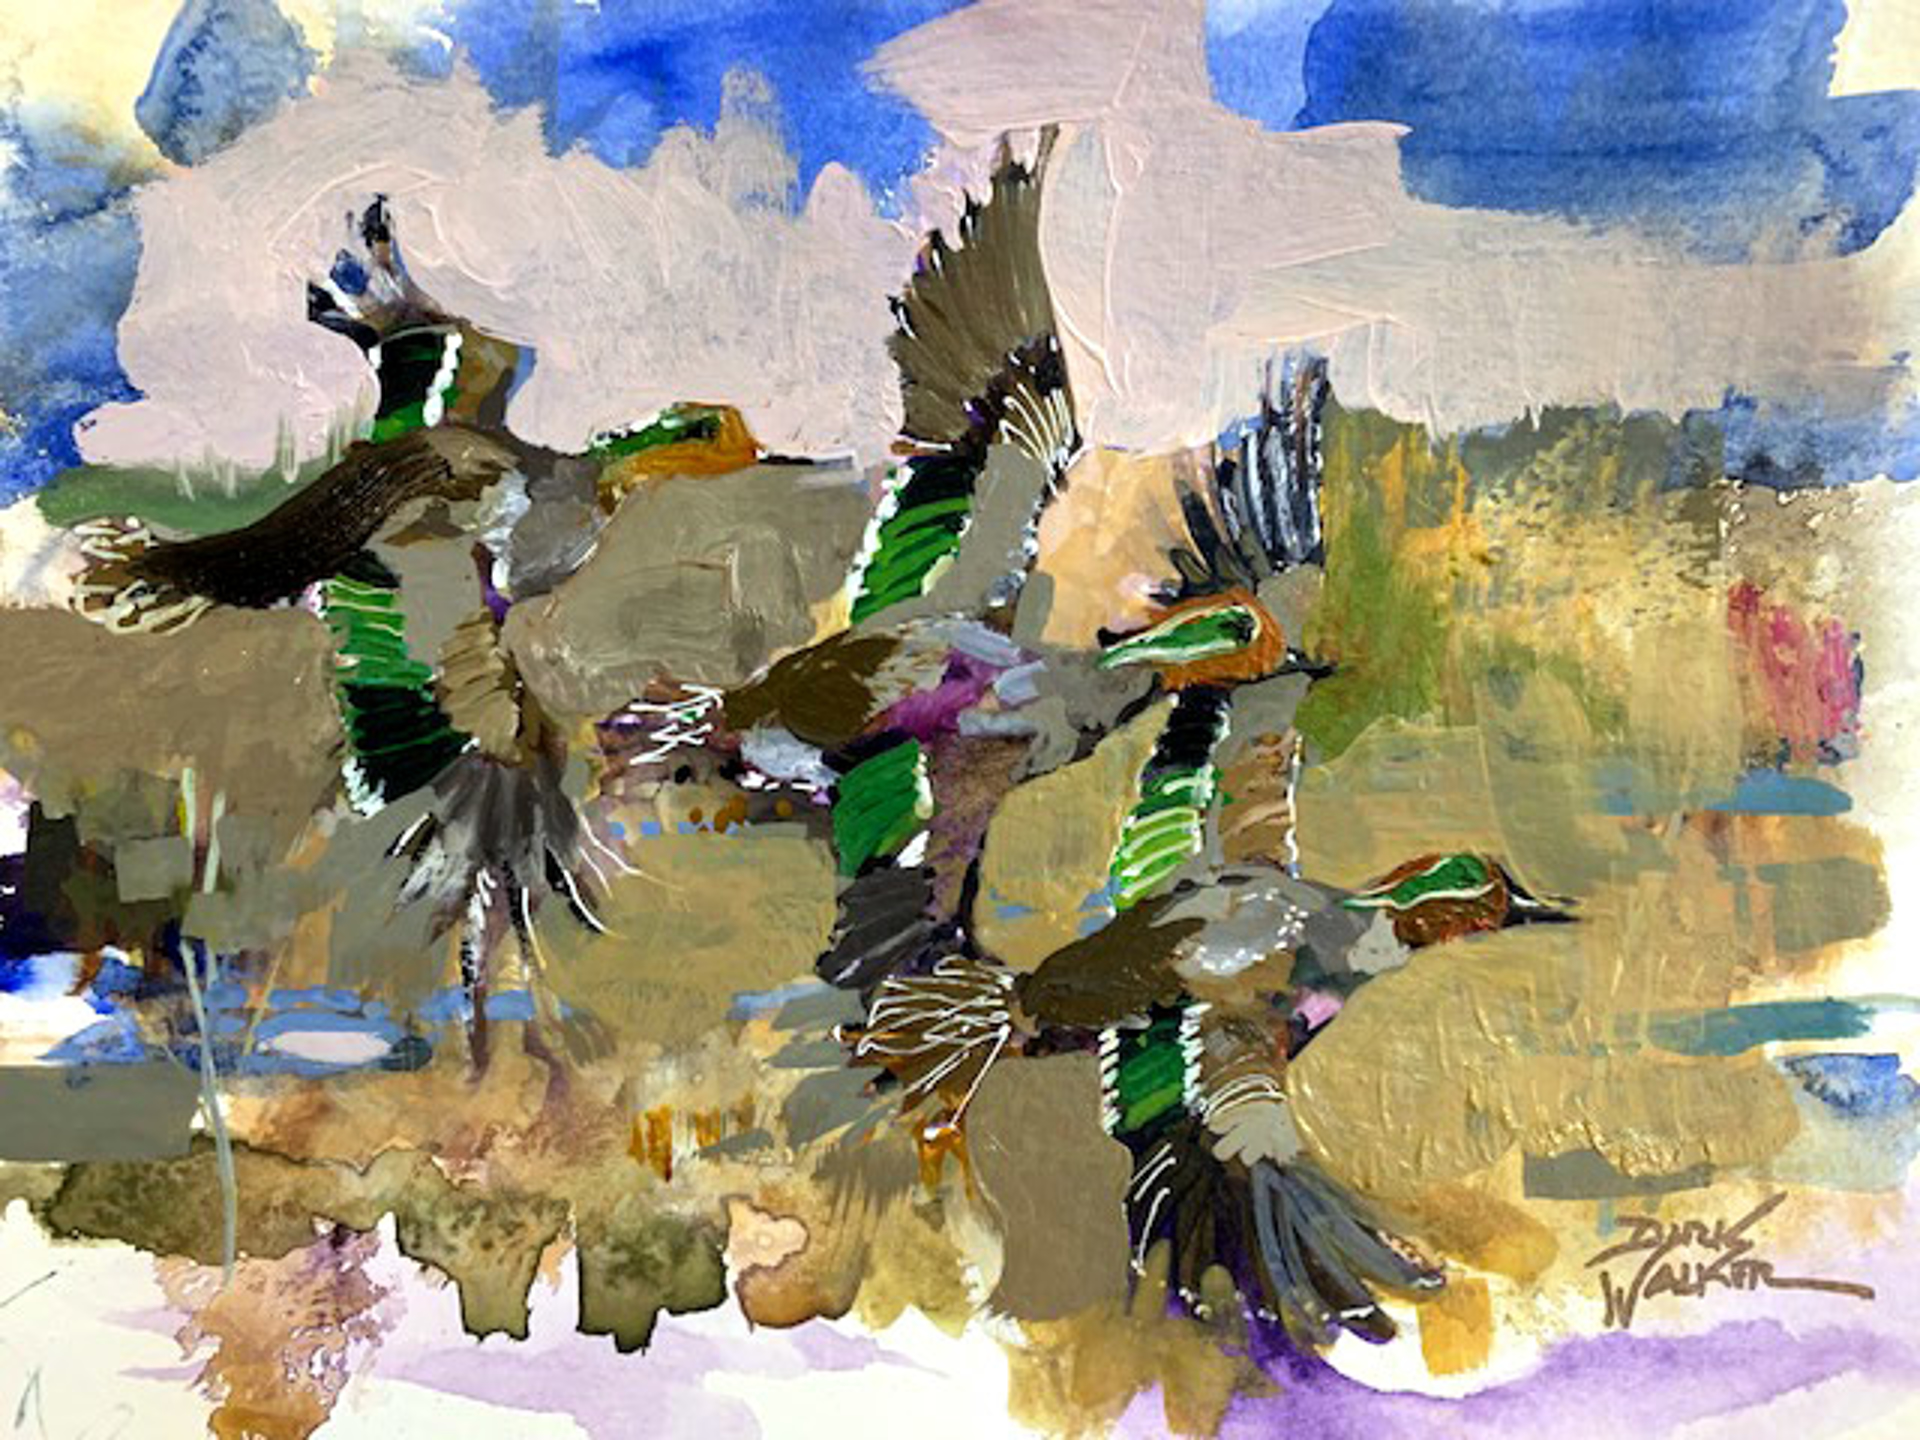 Ducks in Flight by Dirk Walker